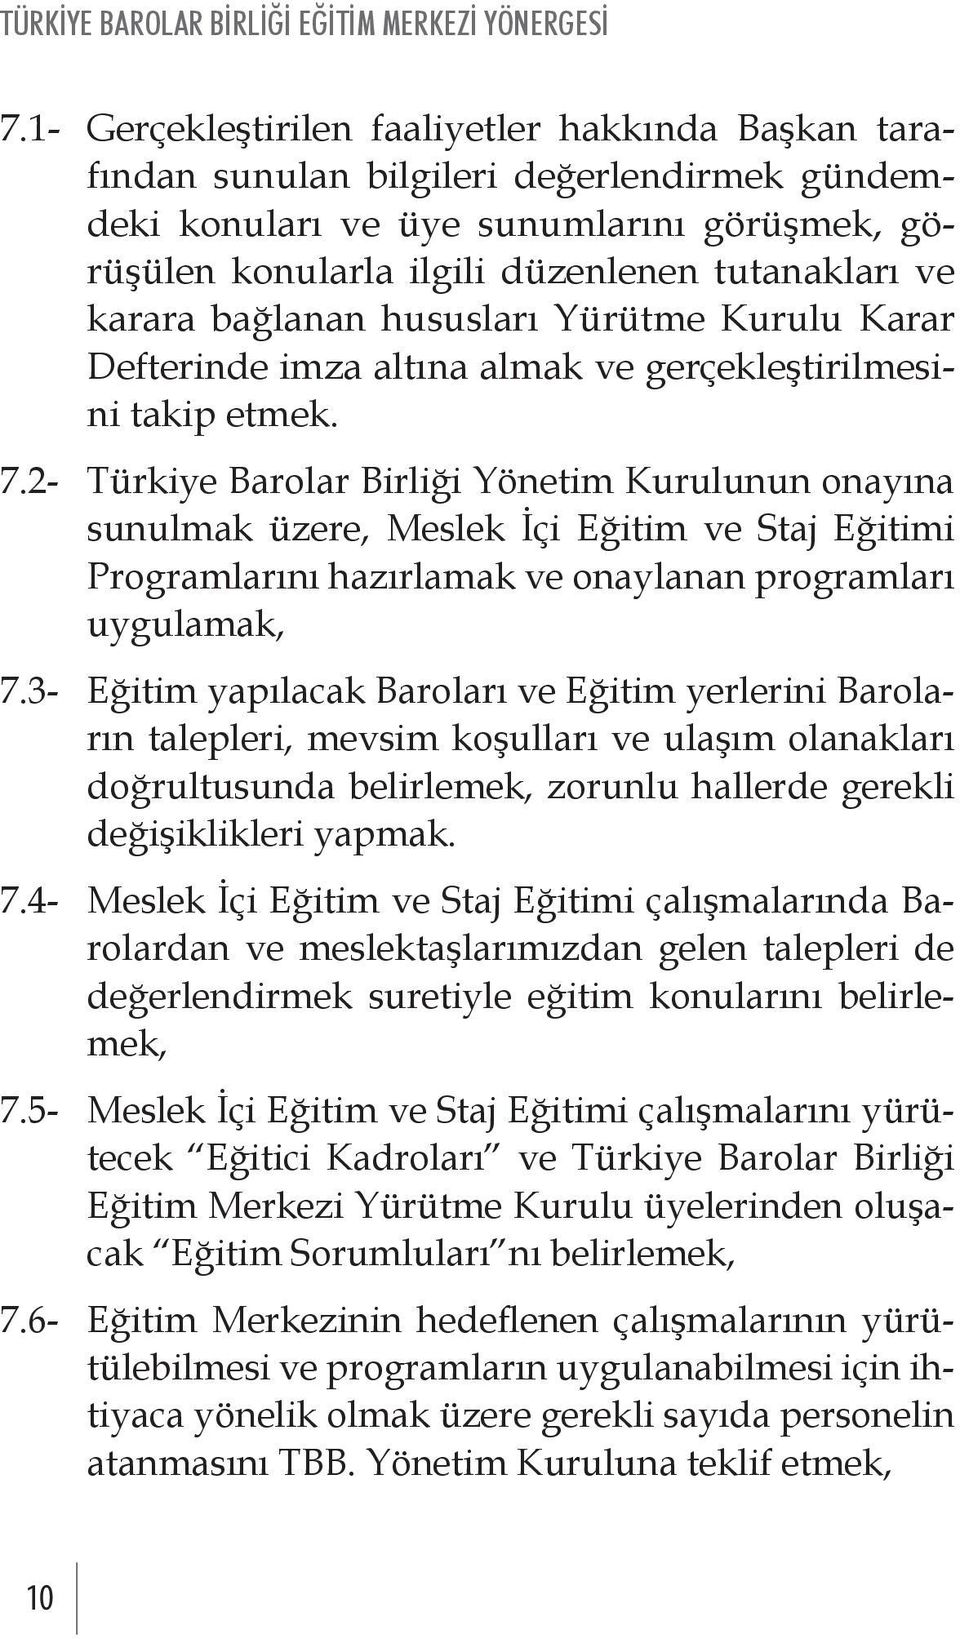 2- Türkiye Barolar Birliği Yönetim Kurulunun onayına sunulmak üzere, Meslek İçi Eğitim ve Staj Eğitimi Programlarını hazırlamak ve onaylanan programları uygulamak, 7.